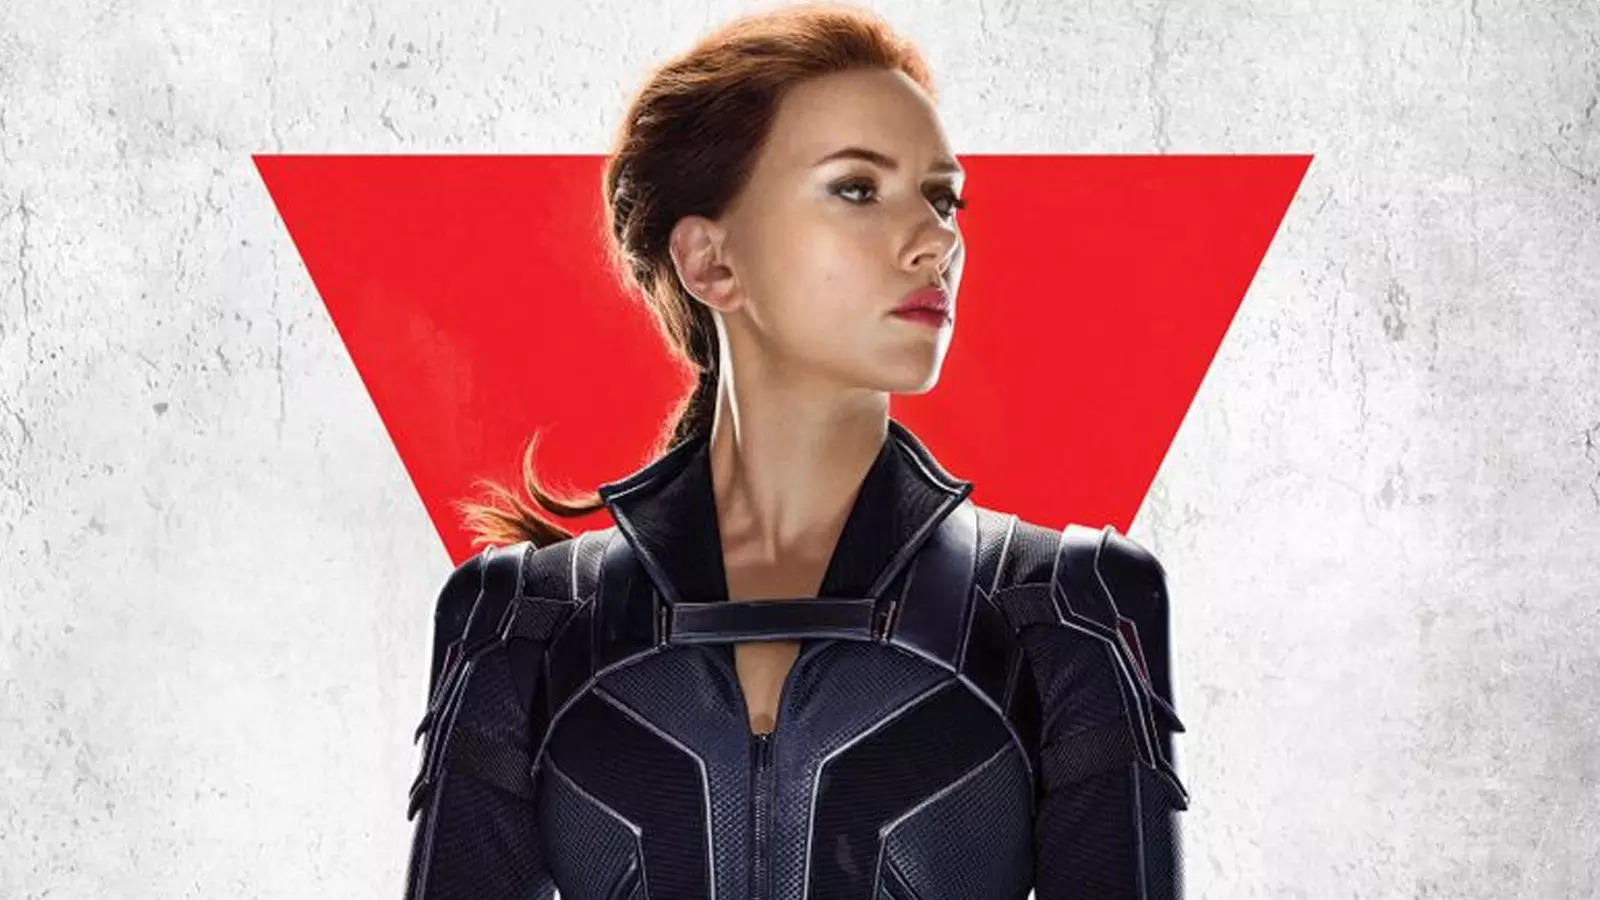 Scarlett settles 'Black Widow' lawsuit